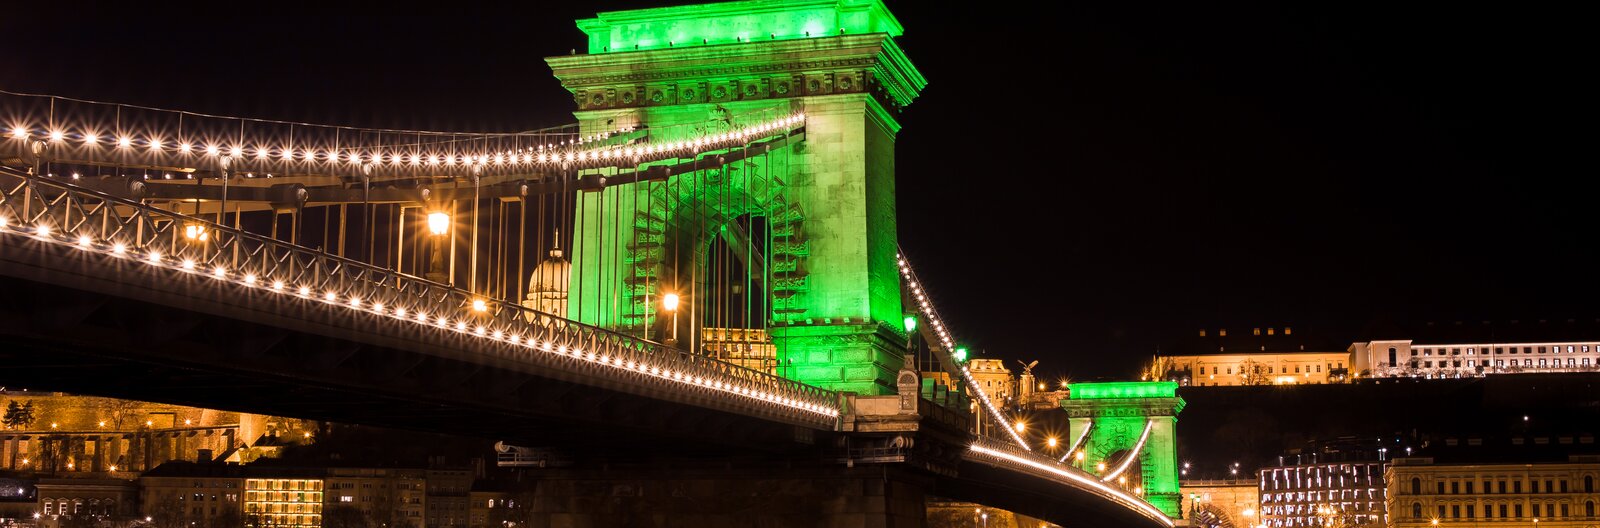 Zöldbe öltözött írek, óriási buli – Itt a Szent Patrik-nap, ünnepeljünk ír kultúrával